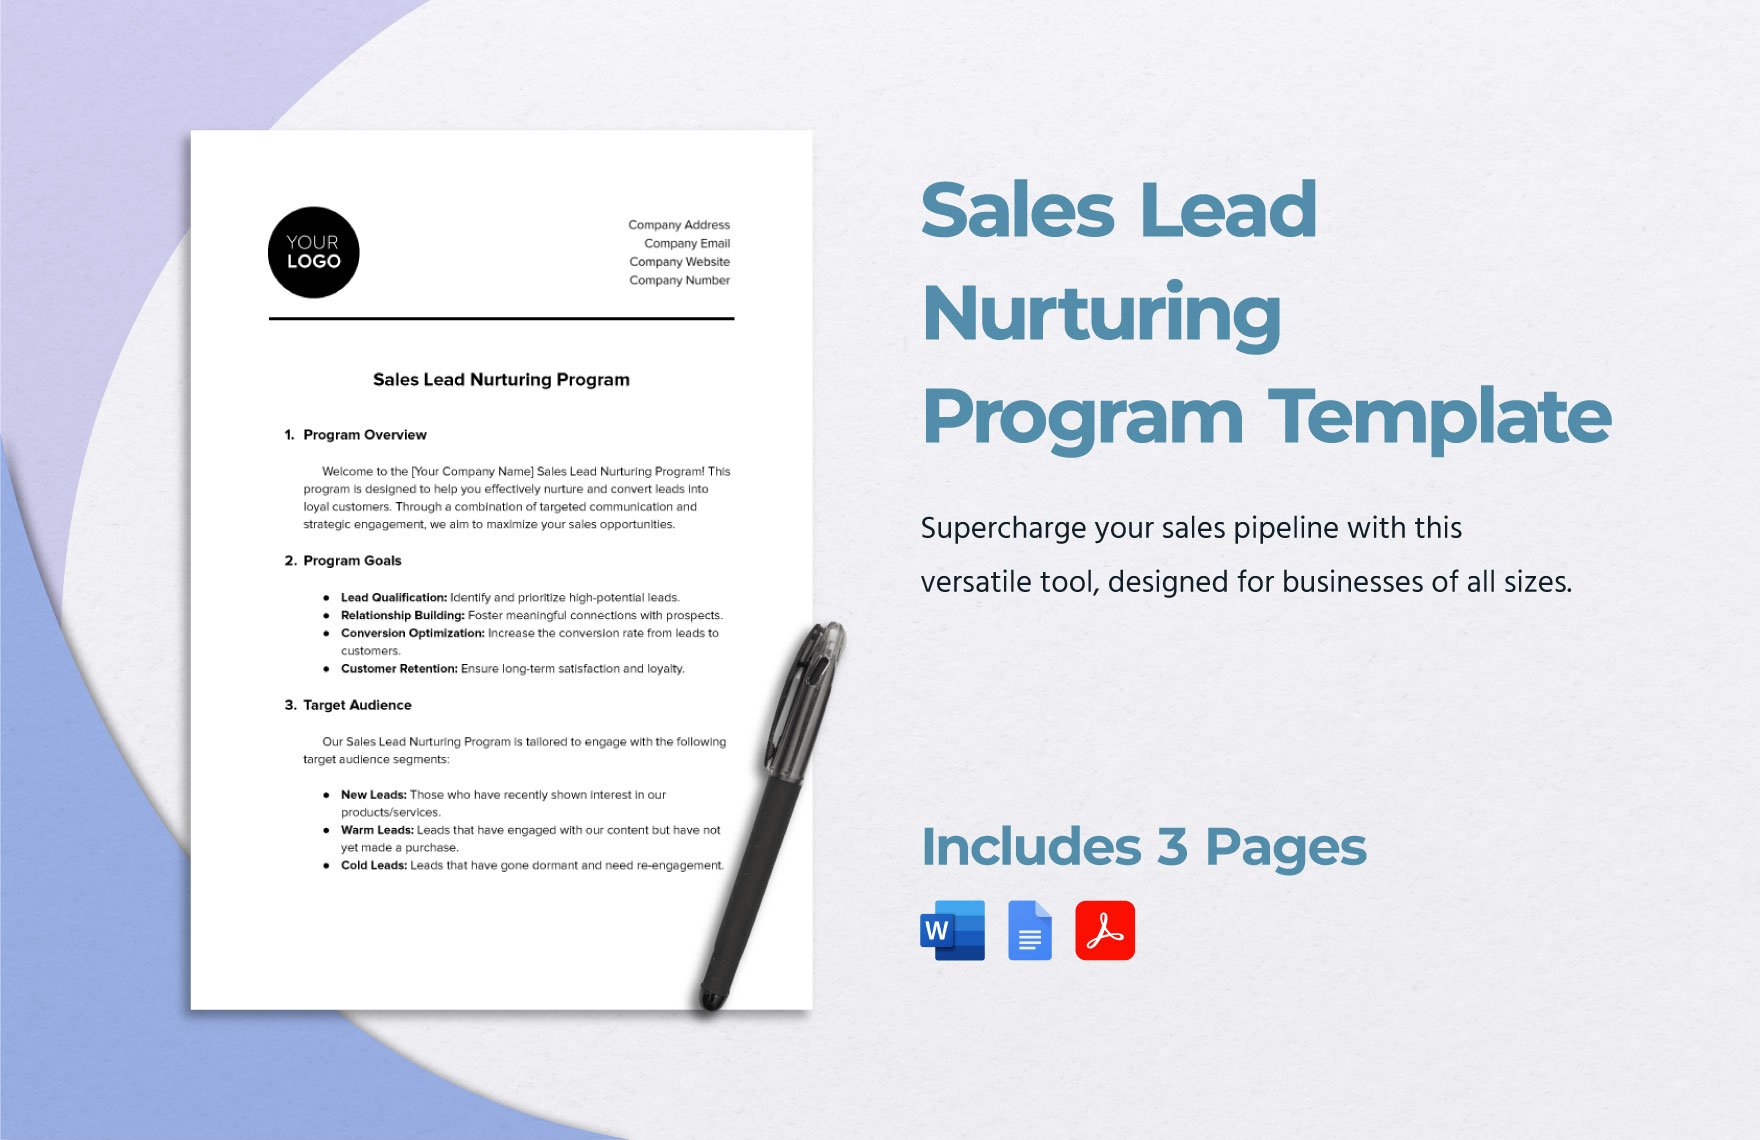 Sales Lead Nurturing Program Template in Word, Google Docs, PDF